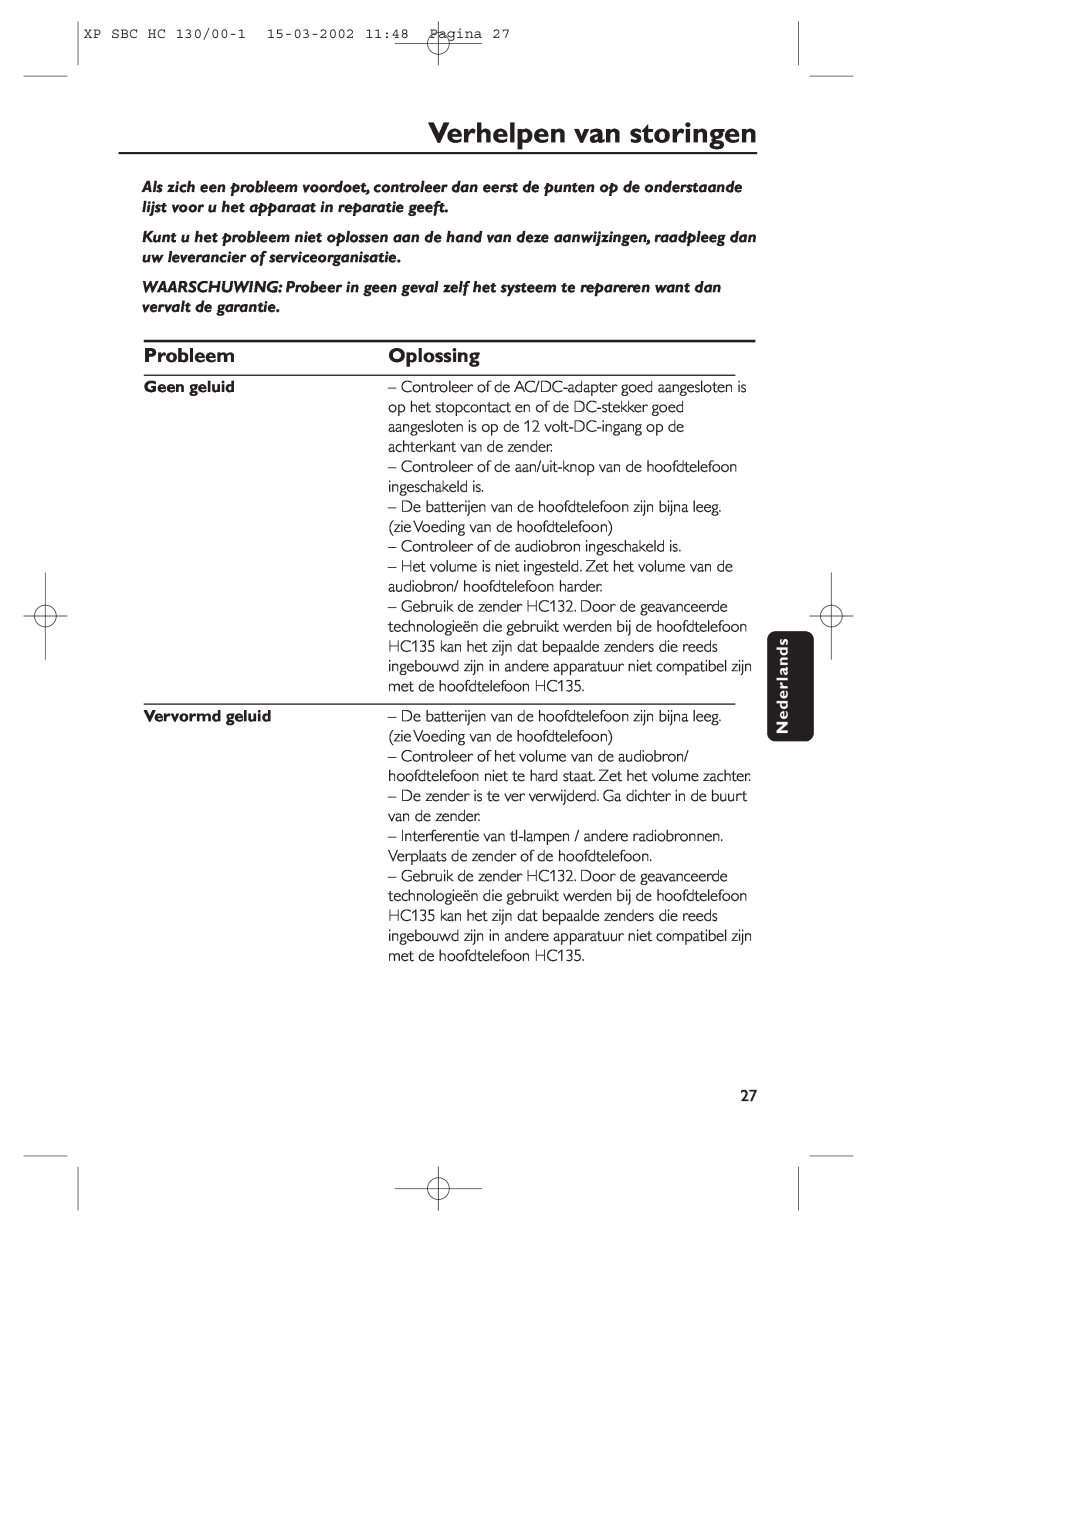 Philips SBC HC130 manual Verhelpen van storingen, Probleem, Oplossing, Geen geluid, Vervormd geluid, Nederlands 